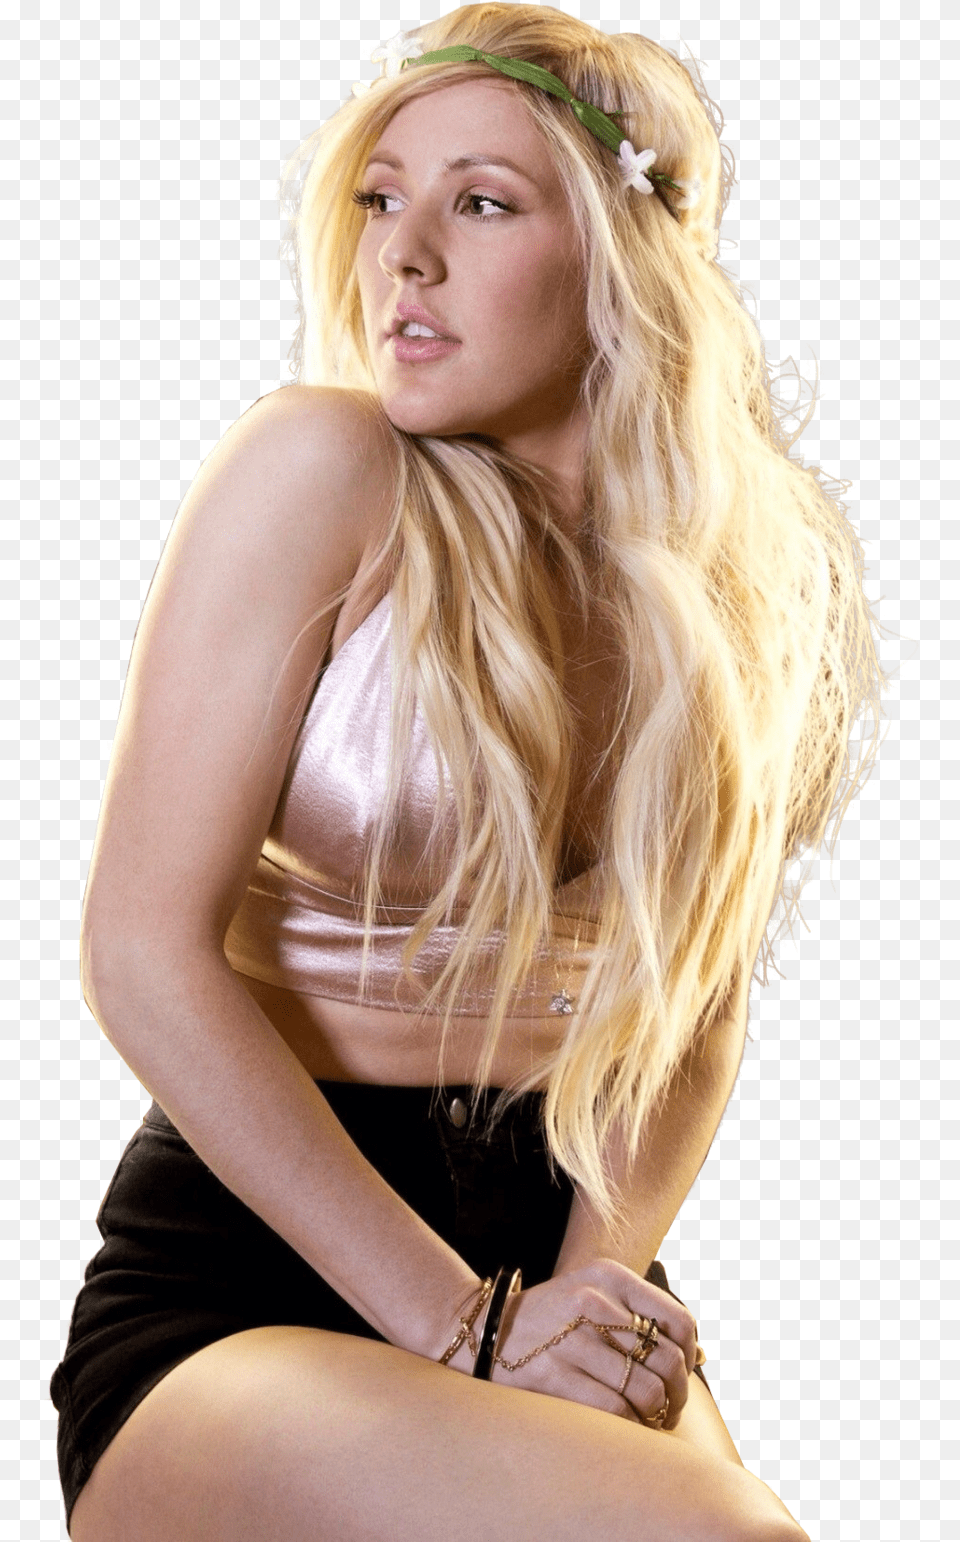 Ellie Goulding Singer Render By Celebrities D81msix Ellie Goulding, Woman, Person, Hand, Hair Free Png